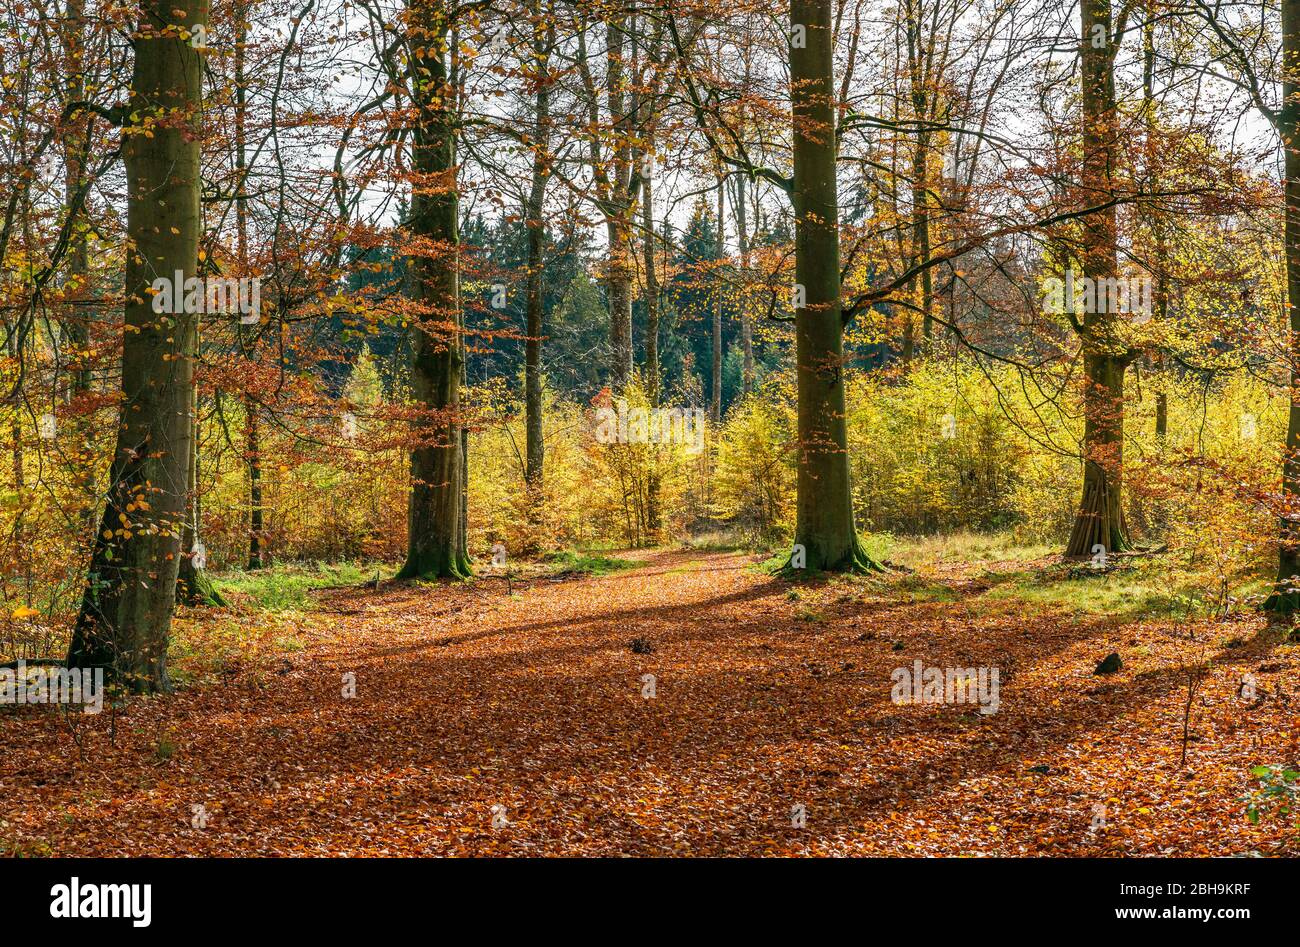 Allemagne, Bade-Wurtemberg, Sigmaringen, forêt de hêtre dans la forêt Josefslust, une zone de chasse de la Maison de Hohenzollern. Le parc Josefslust est ouvert au public comme zone de loisirs. Banque D'Images